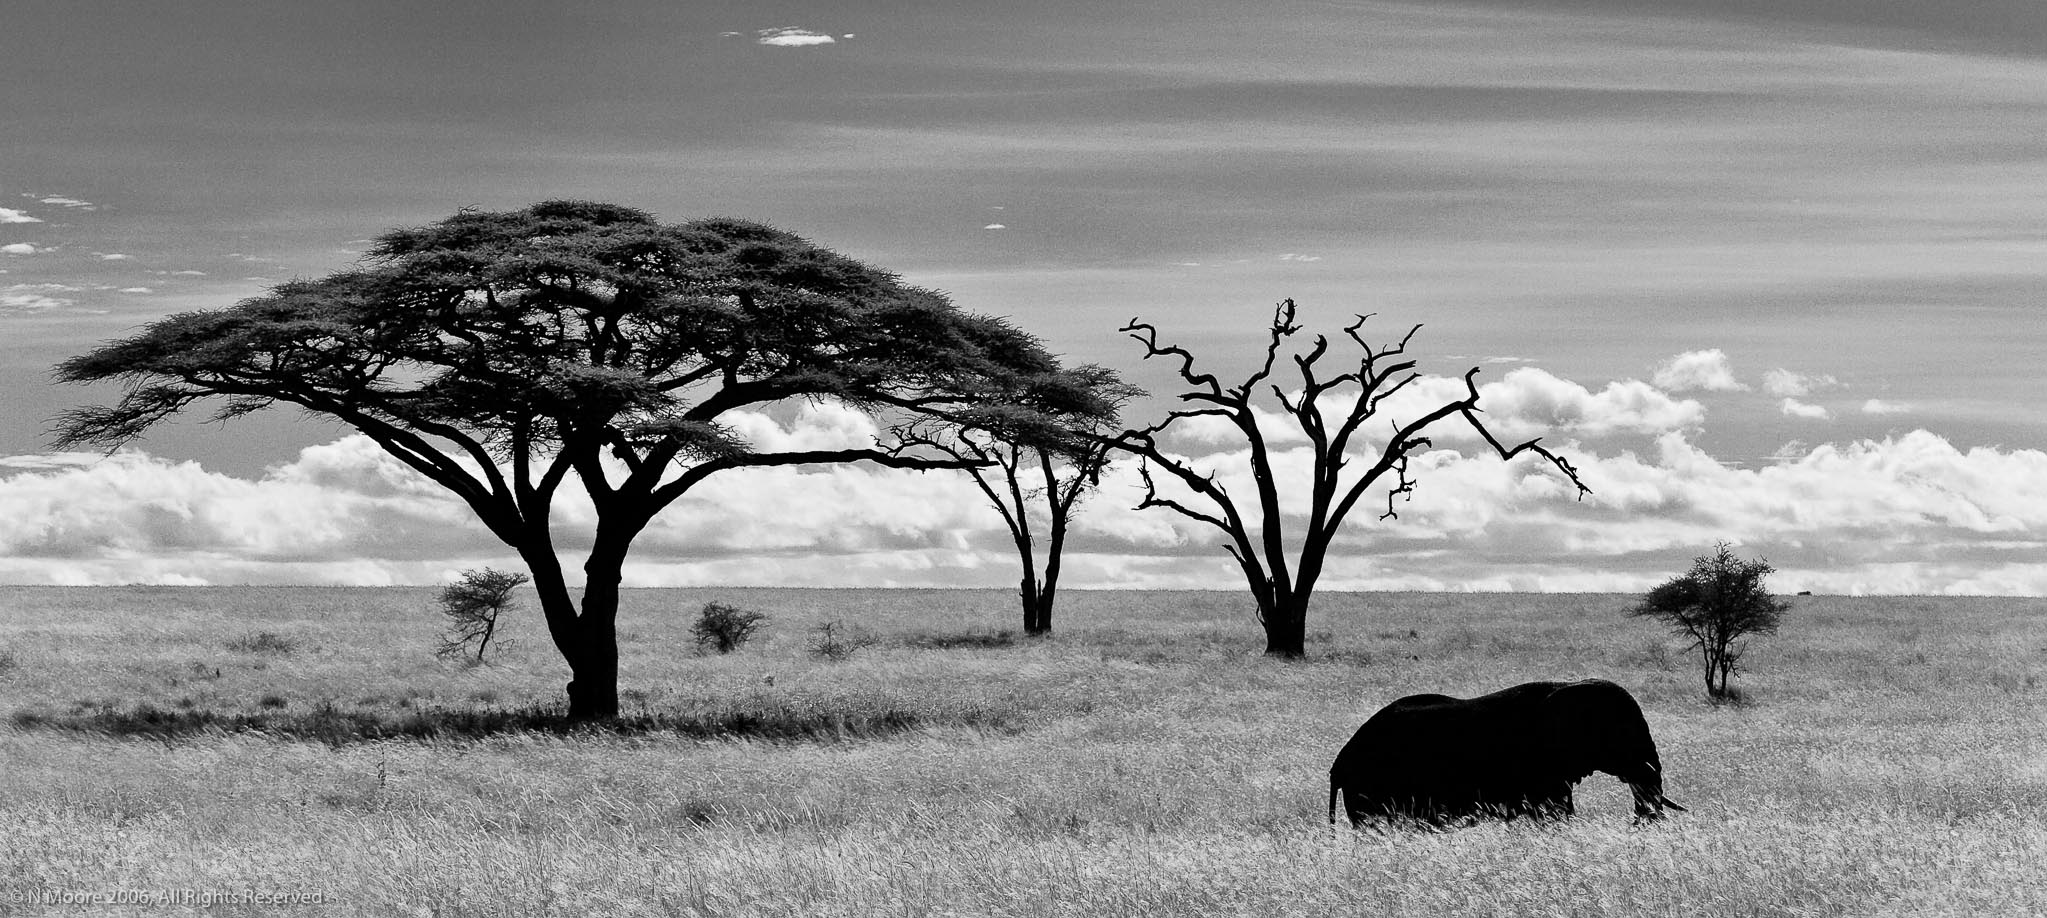 Passing through, Serengeti